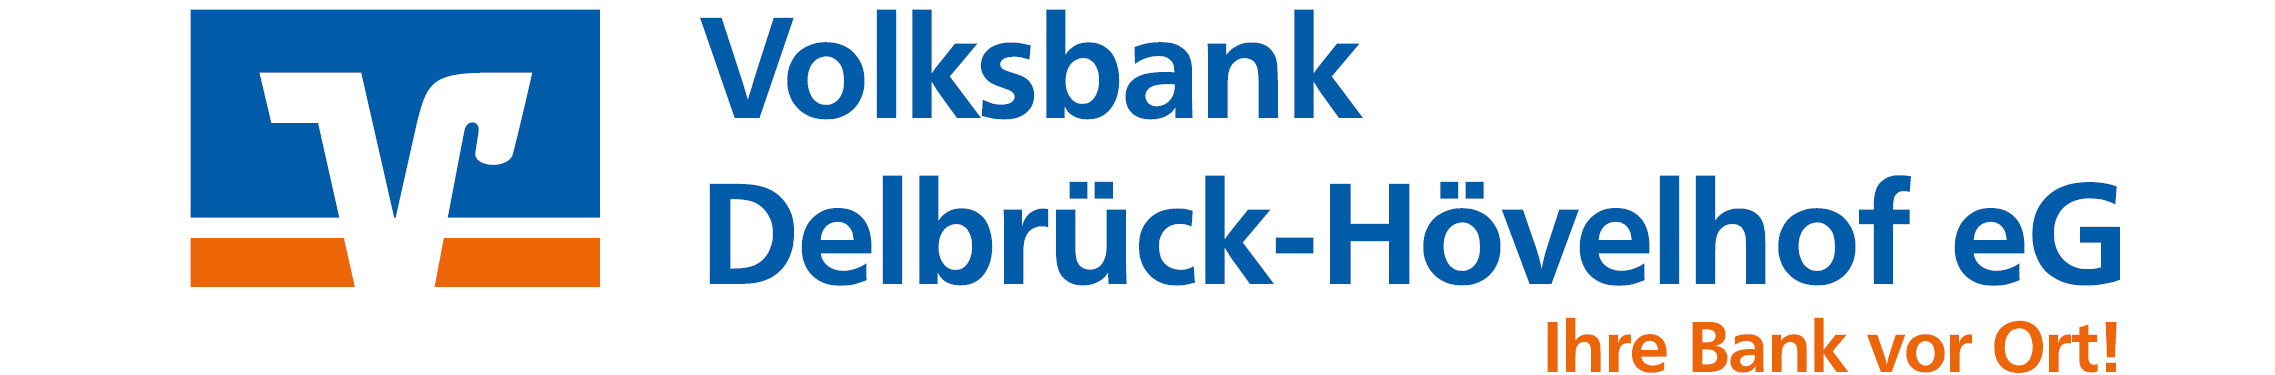 Volksbank Delbrück-Hövelhof eG Logo